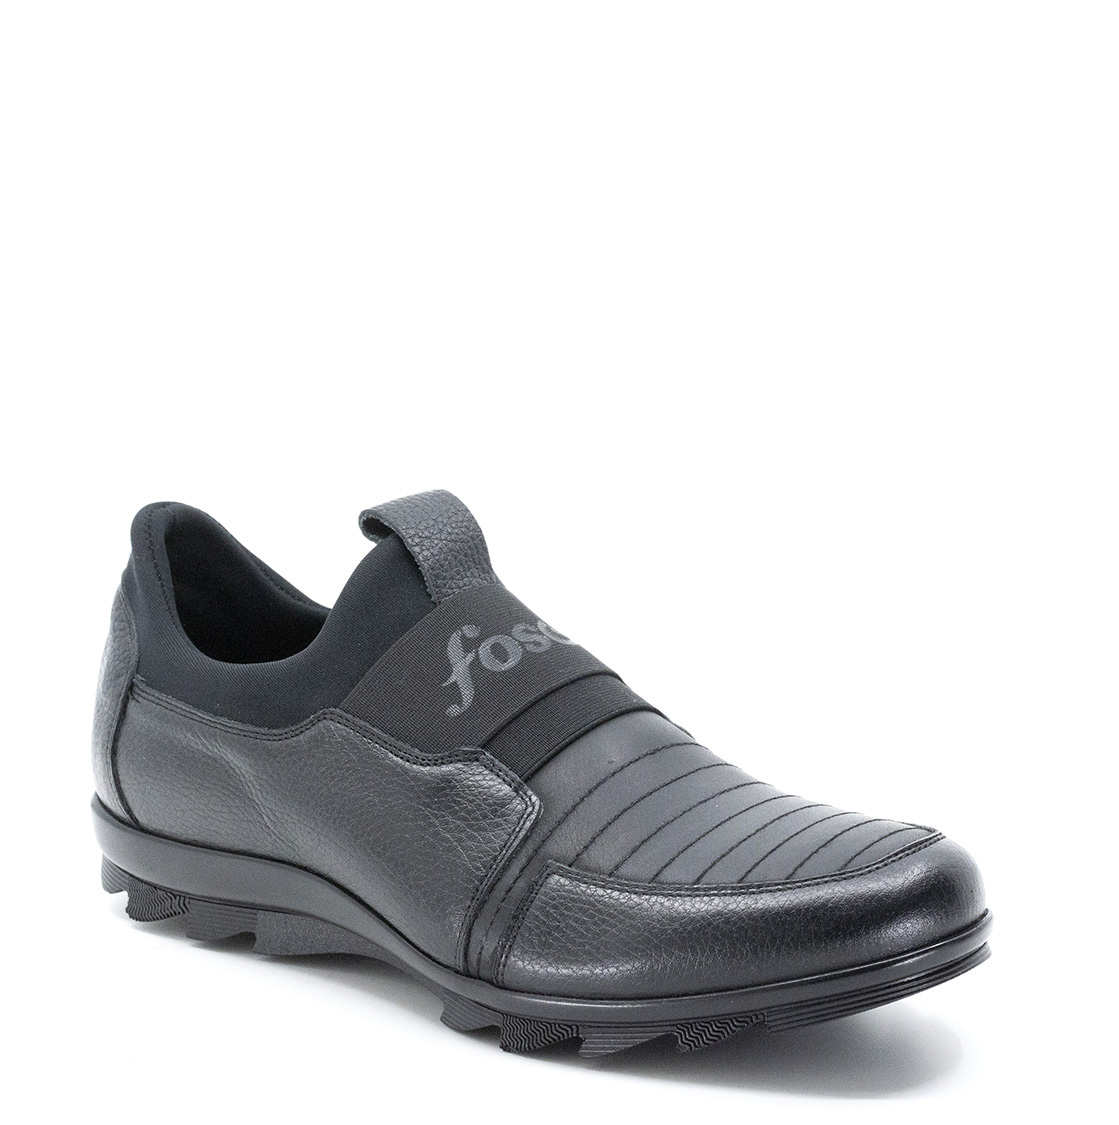 Fosco Hakiki Deri Casual Kauçuk Taban Erkek Kışlık Ayakkabı, Renk: Siyah, Beden: 39